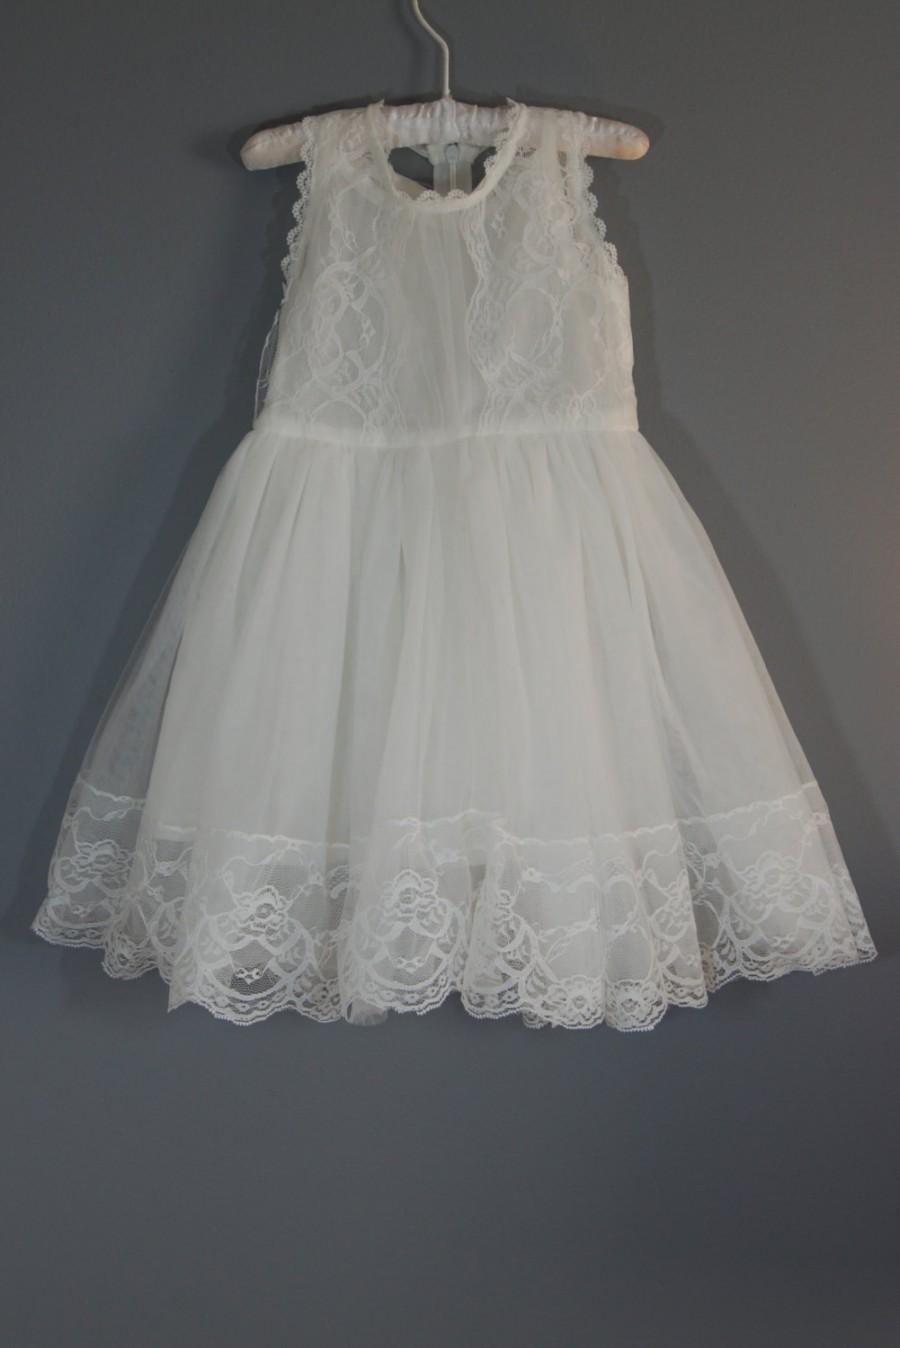 زفاف - Caroline vintage white flower girl dress,girl dress, baby dress, lace dress, vintage lace flower girl dress, lace dress, baptism dress